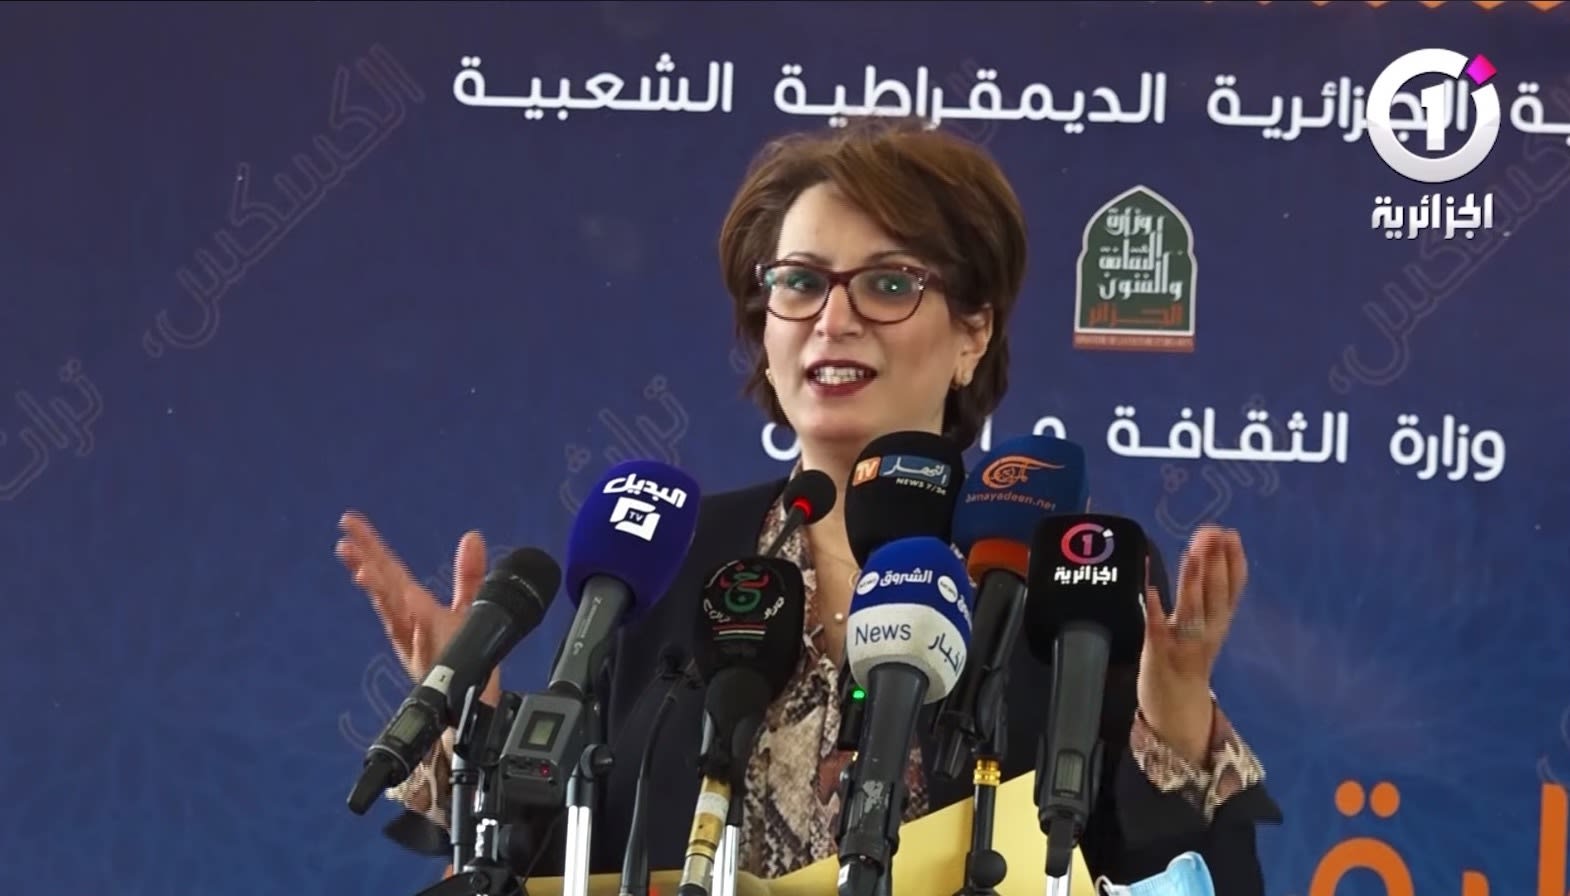 وزيرة الثقافة الجزائرية تثير جدلاً بعد تصريحاتها عن مهارة النساء في تحضير "الكسكس"